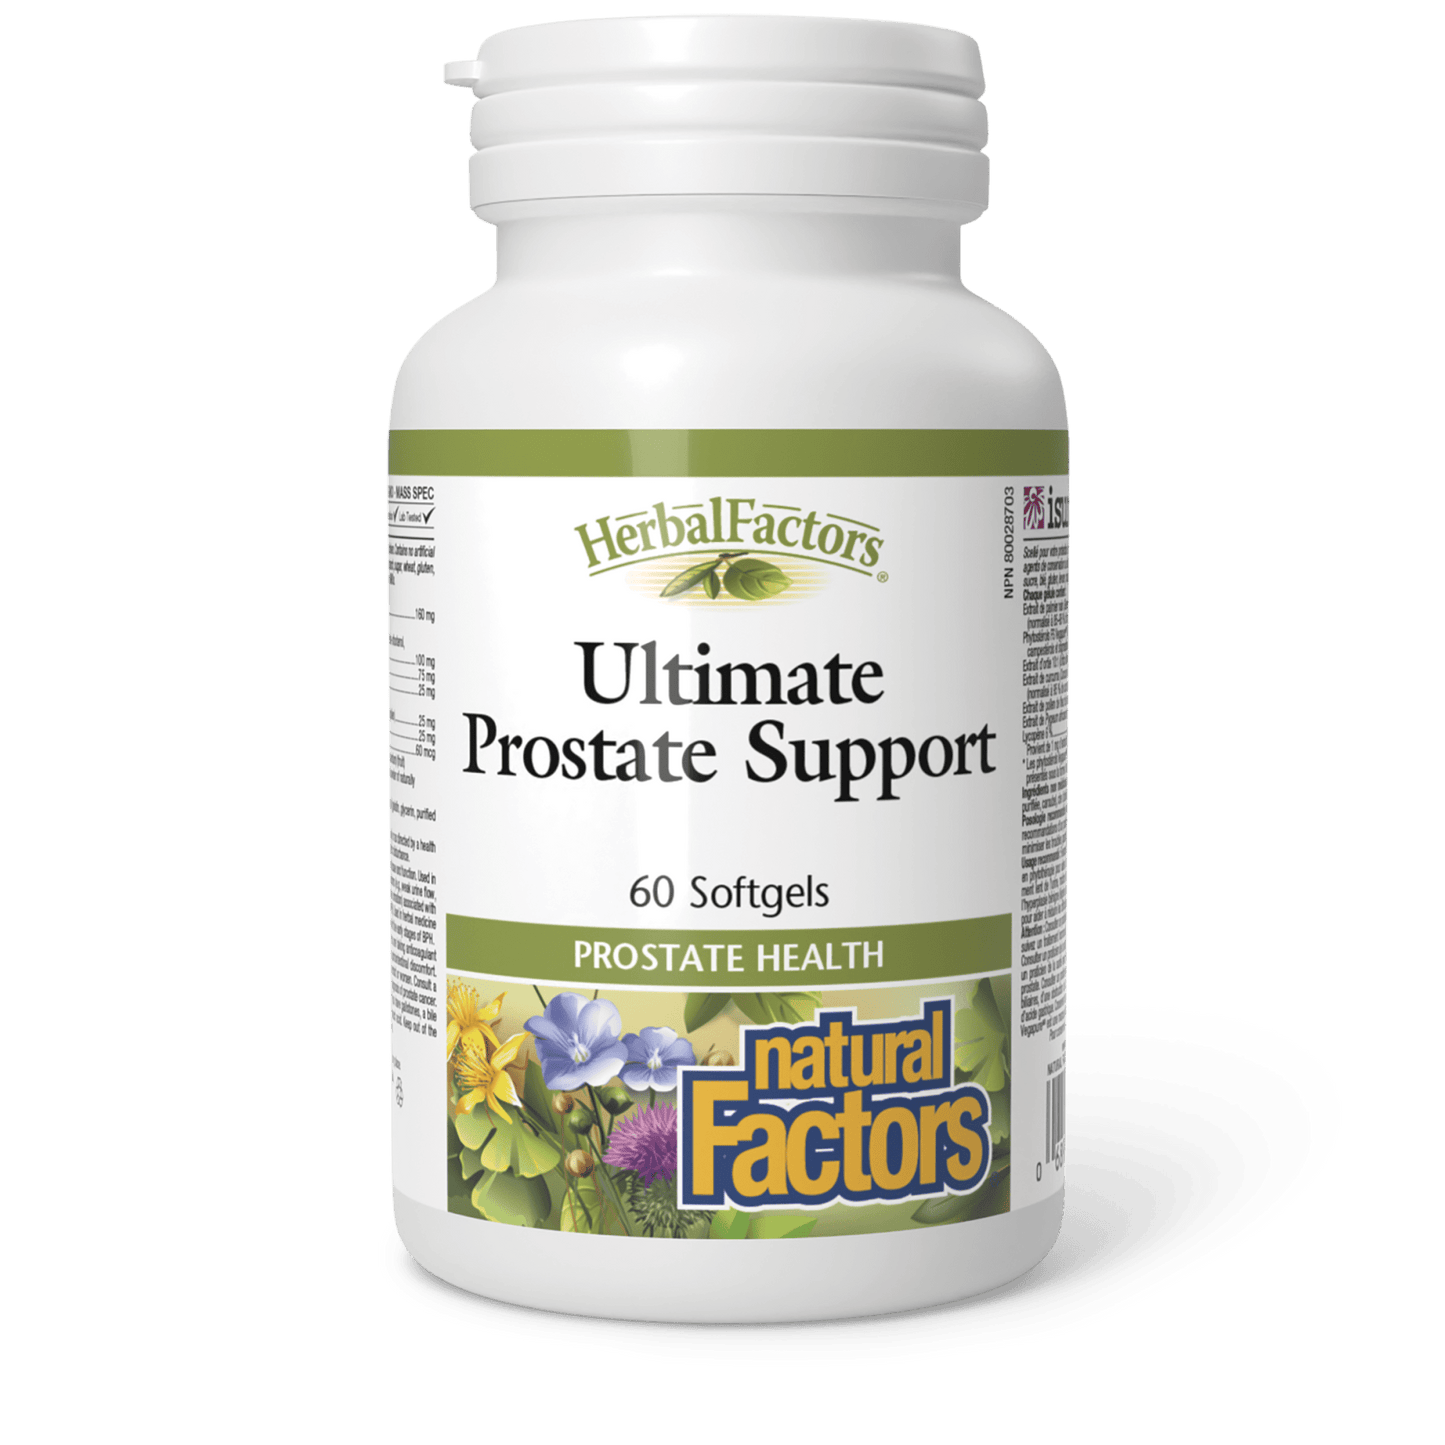 Ultimate Prostate Support, HerbalFactors, Natural Factors|v|image|3512